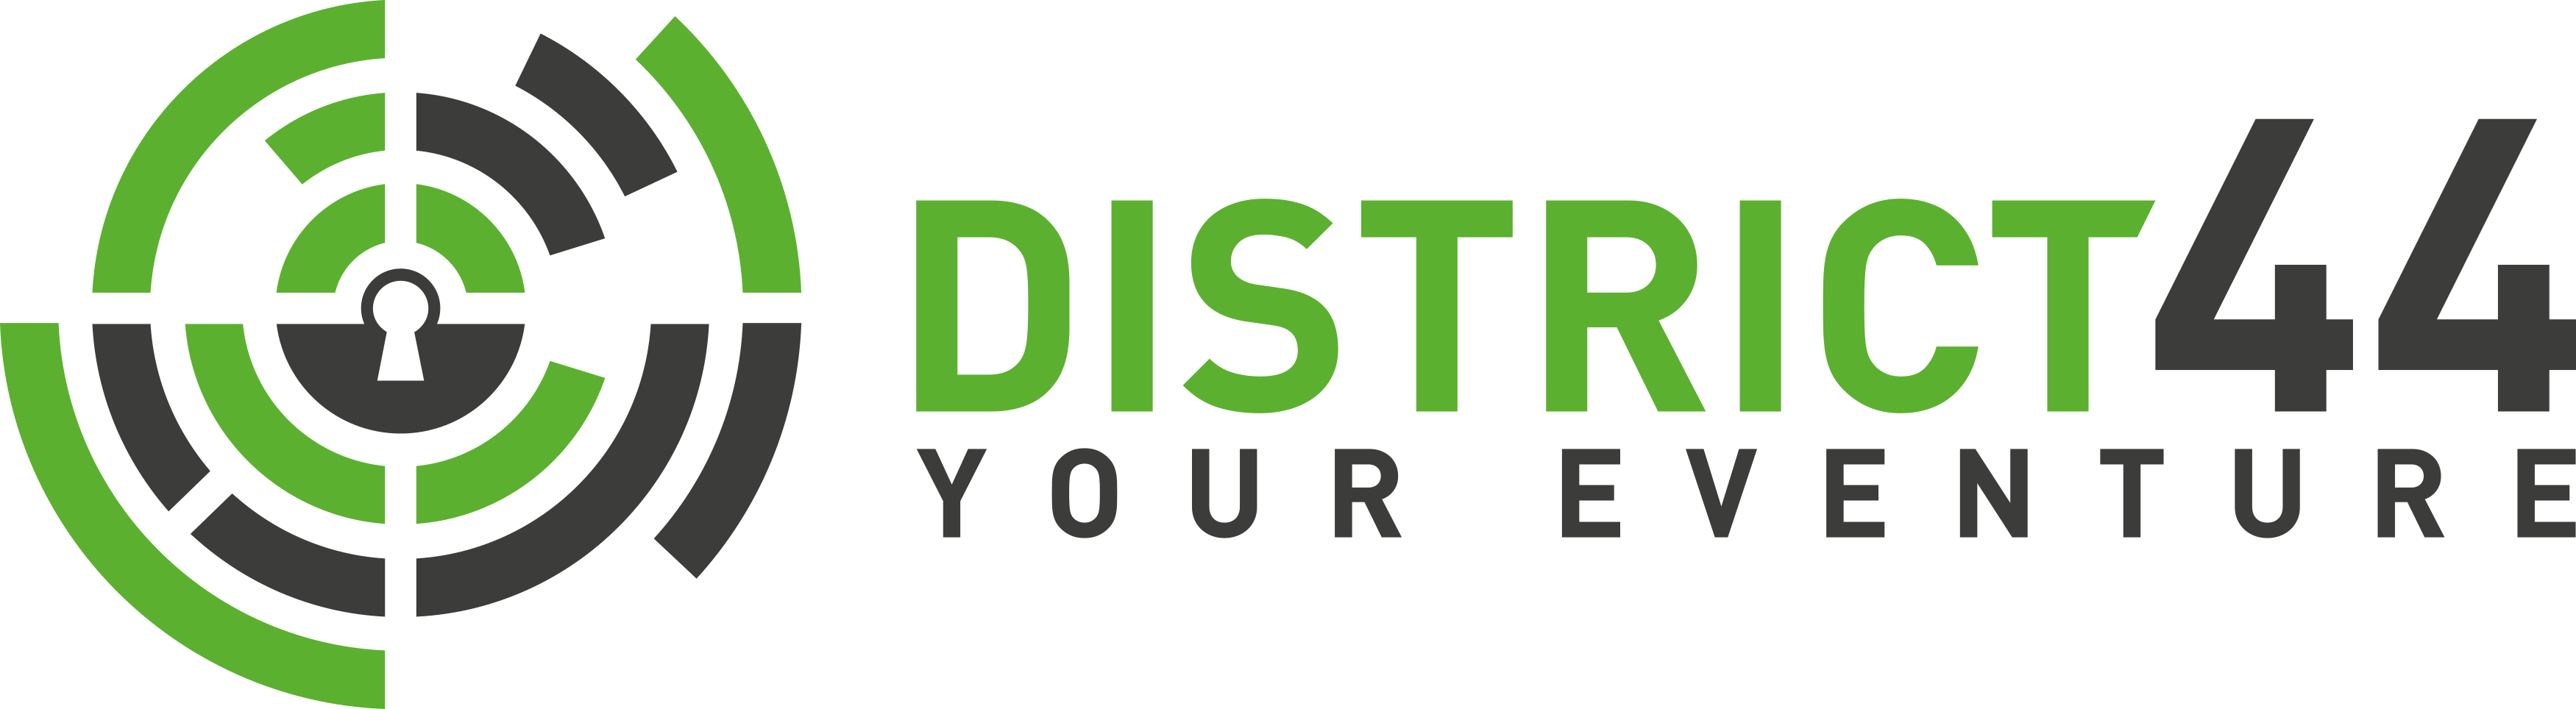 District 44 GmbH Logo